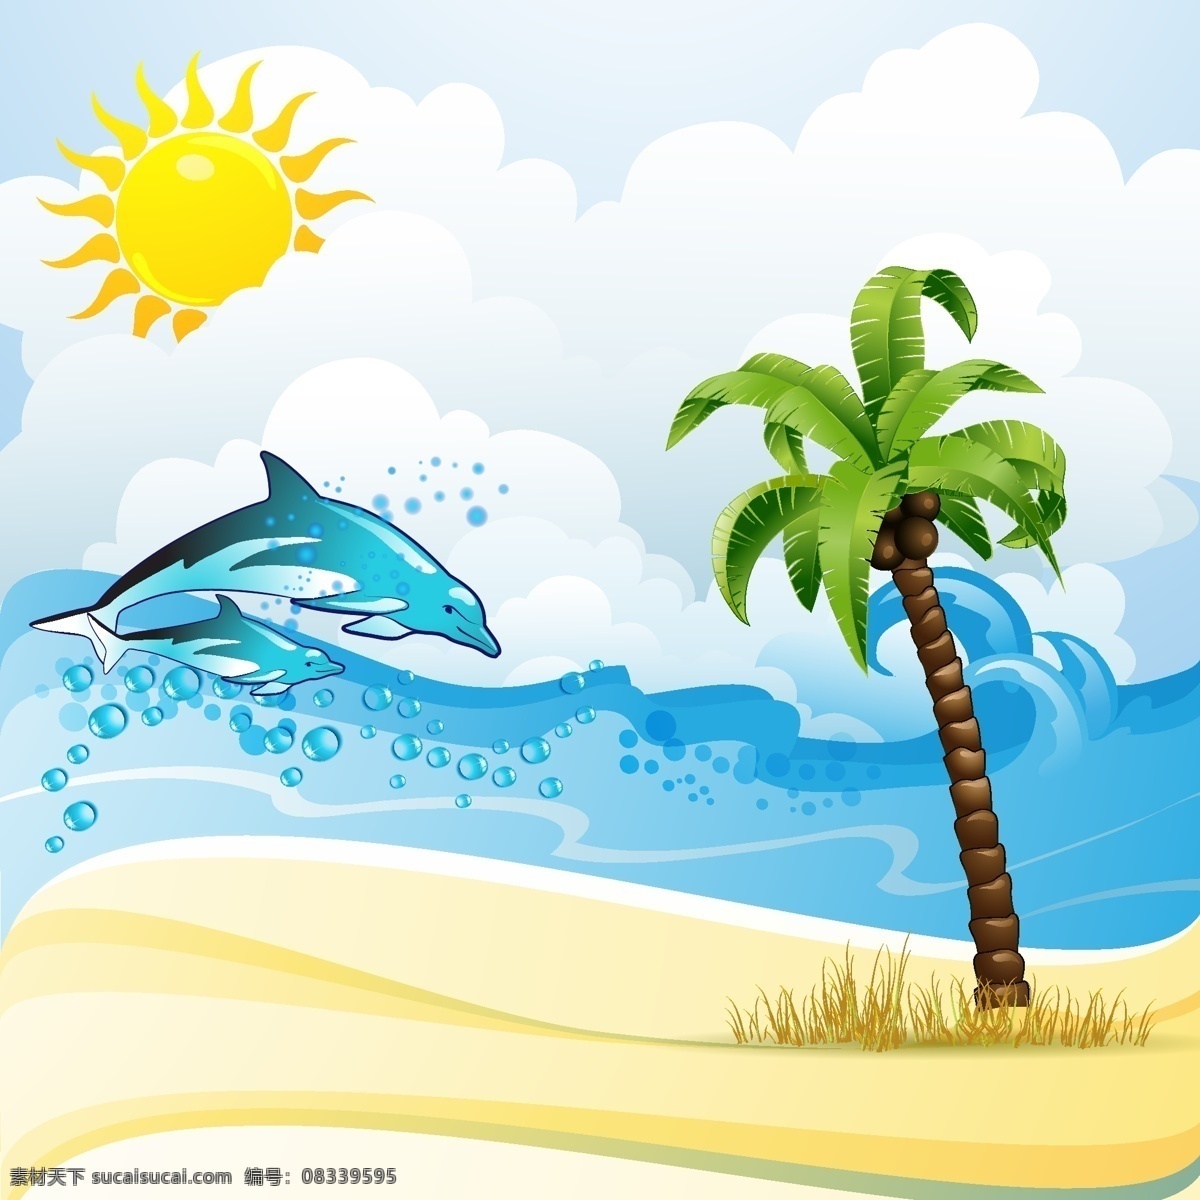 夏日旅游素材 旅游 水花矢量 太阳 海滩 海浪 海豚 椰树 度假 矢量 背景 底纹 底纹背景 底纹边框